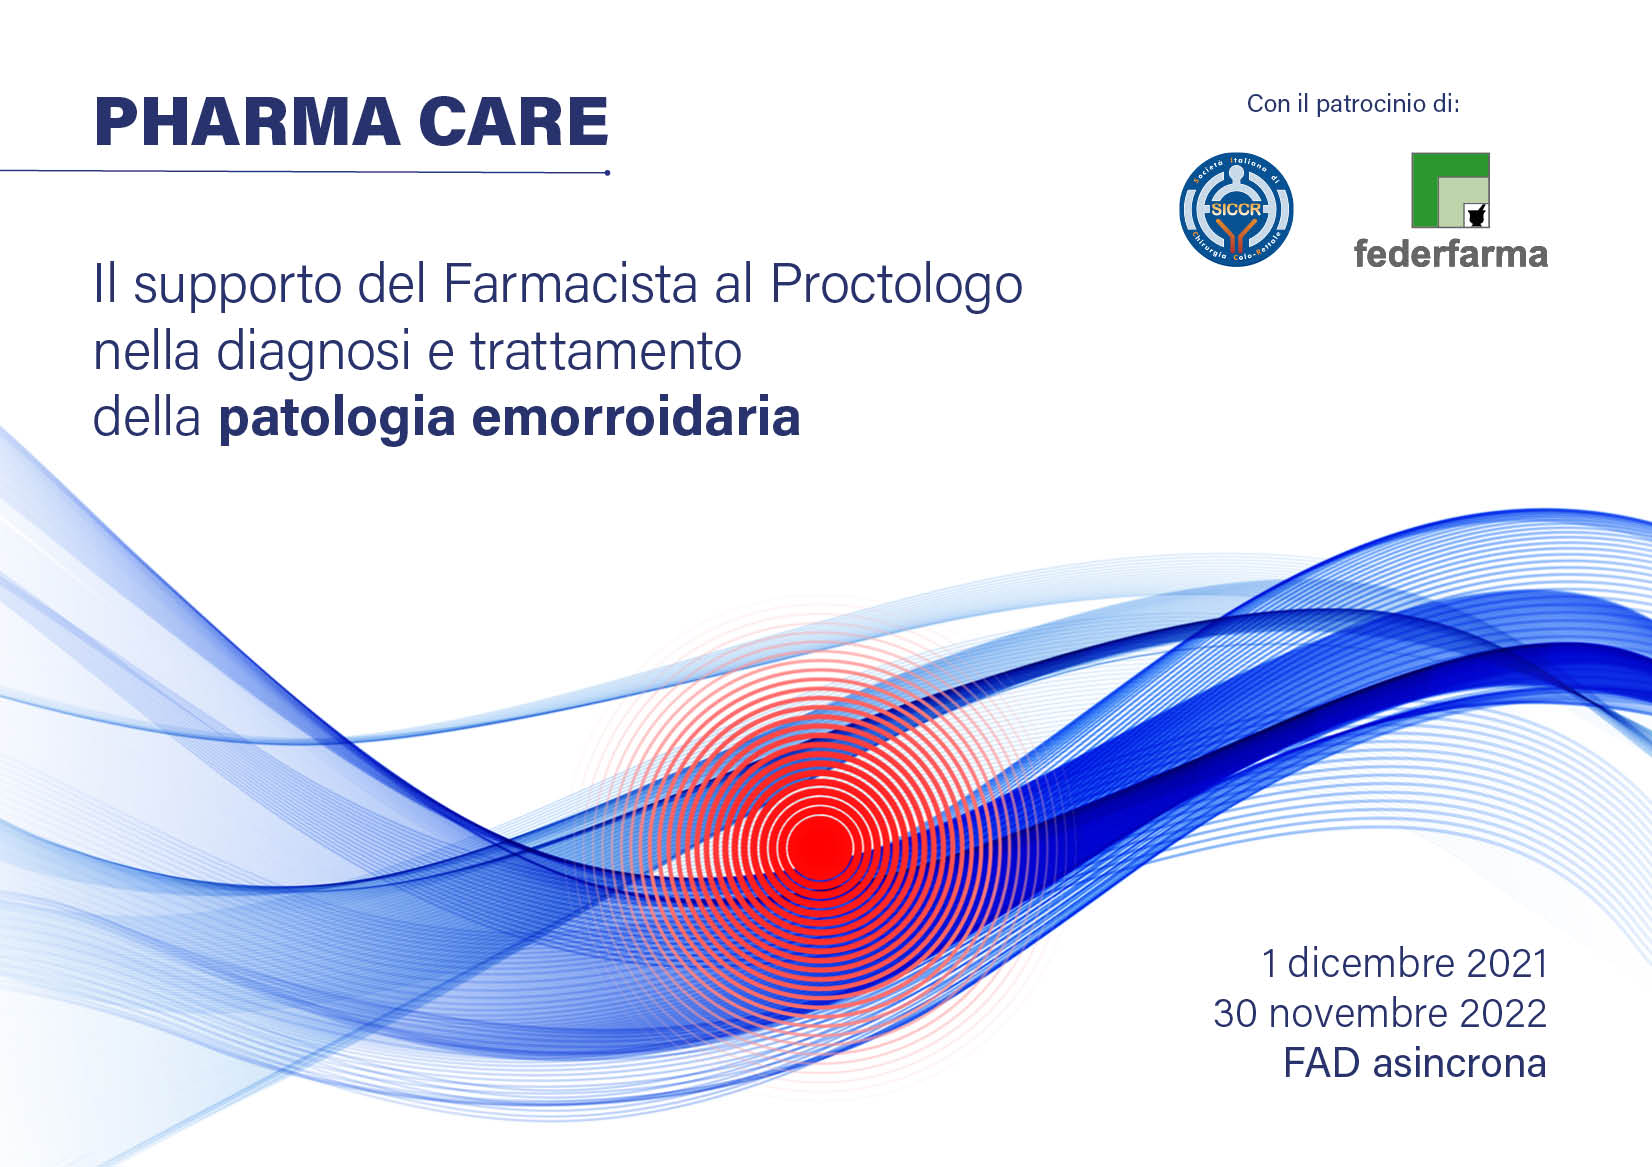 PHARMA CARE - Il supporto del farmacista al proctologo nella diagnosi e trattamento della patologia emorroidaria